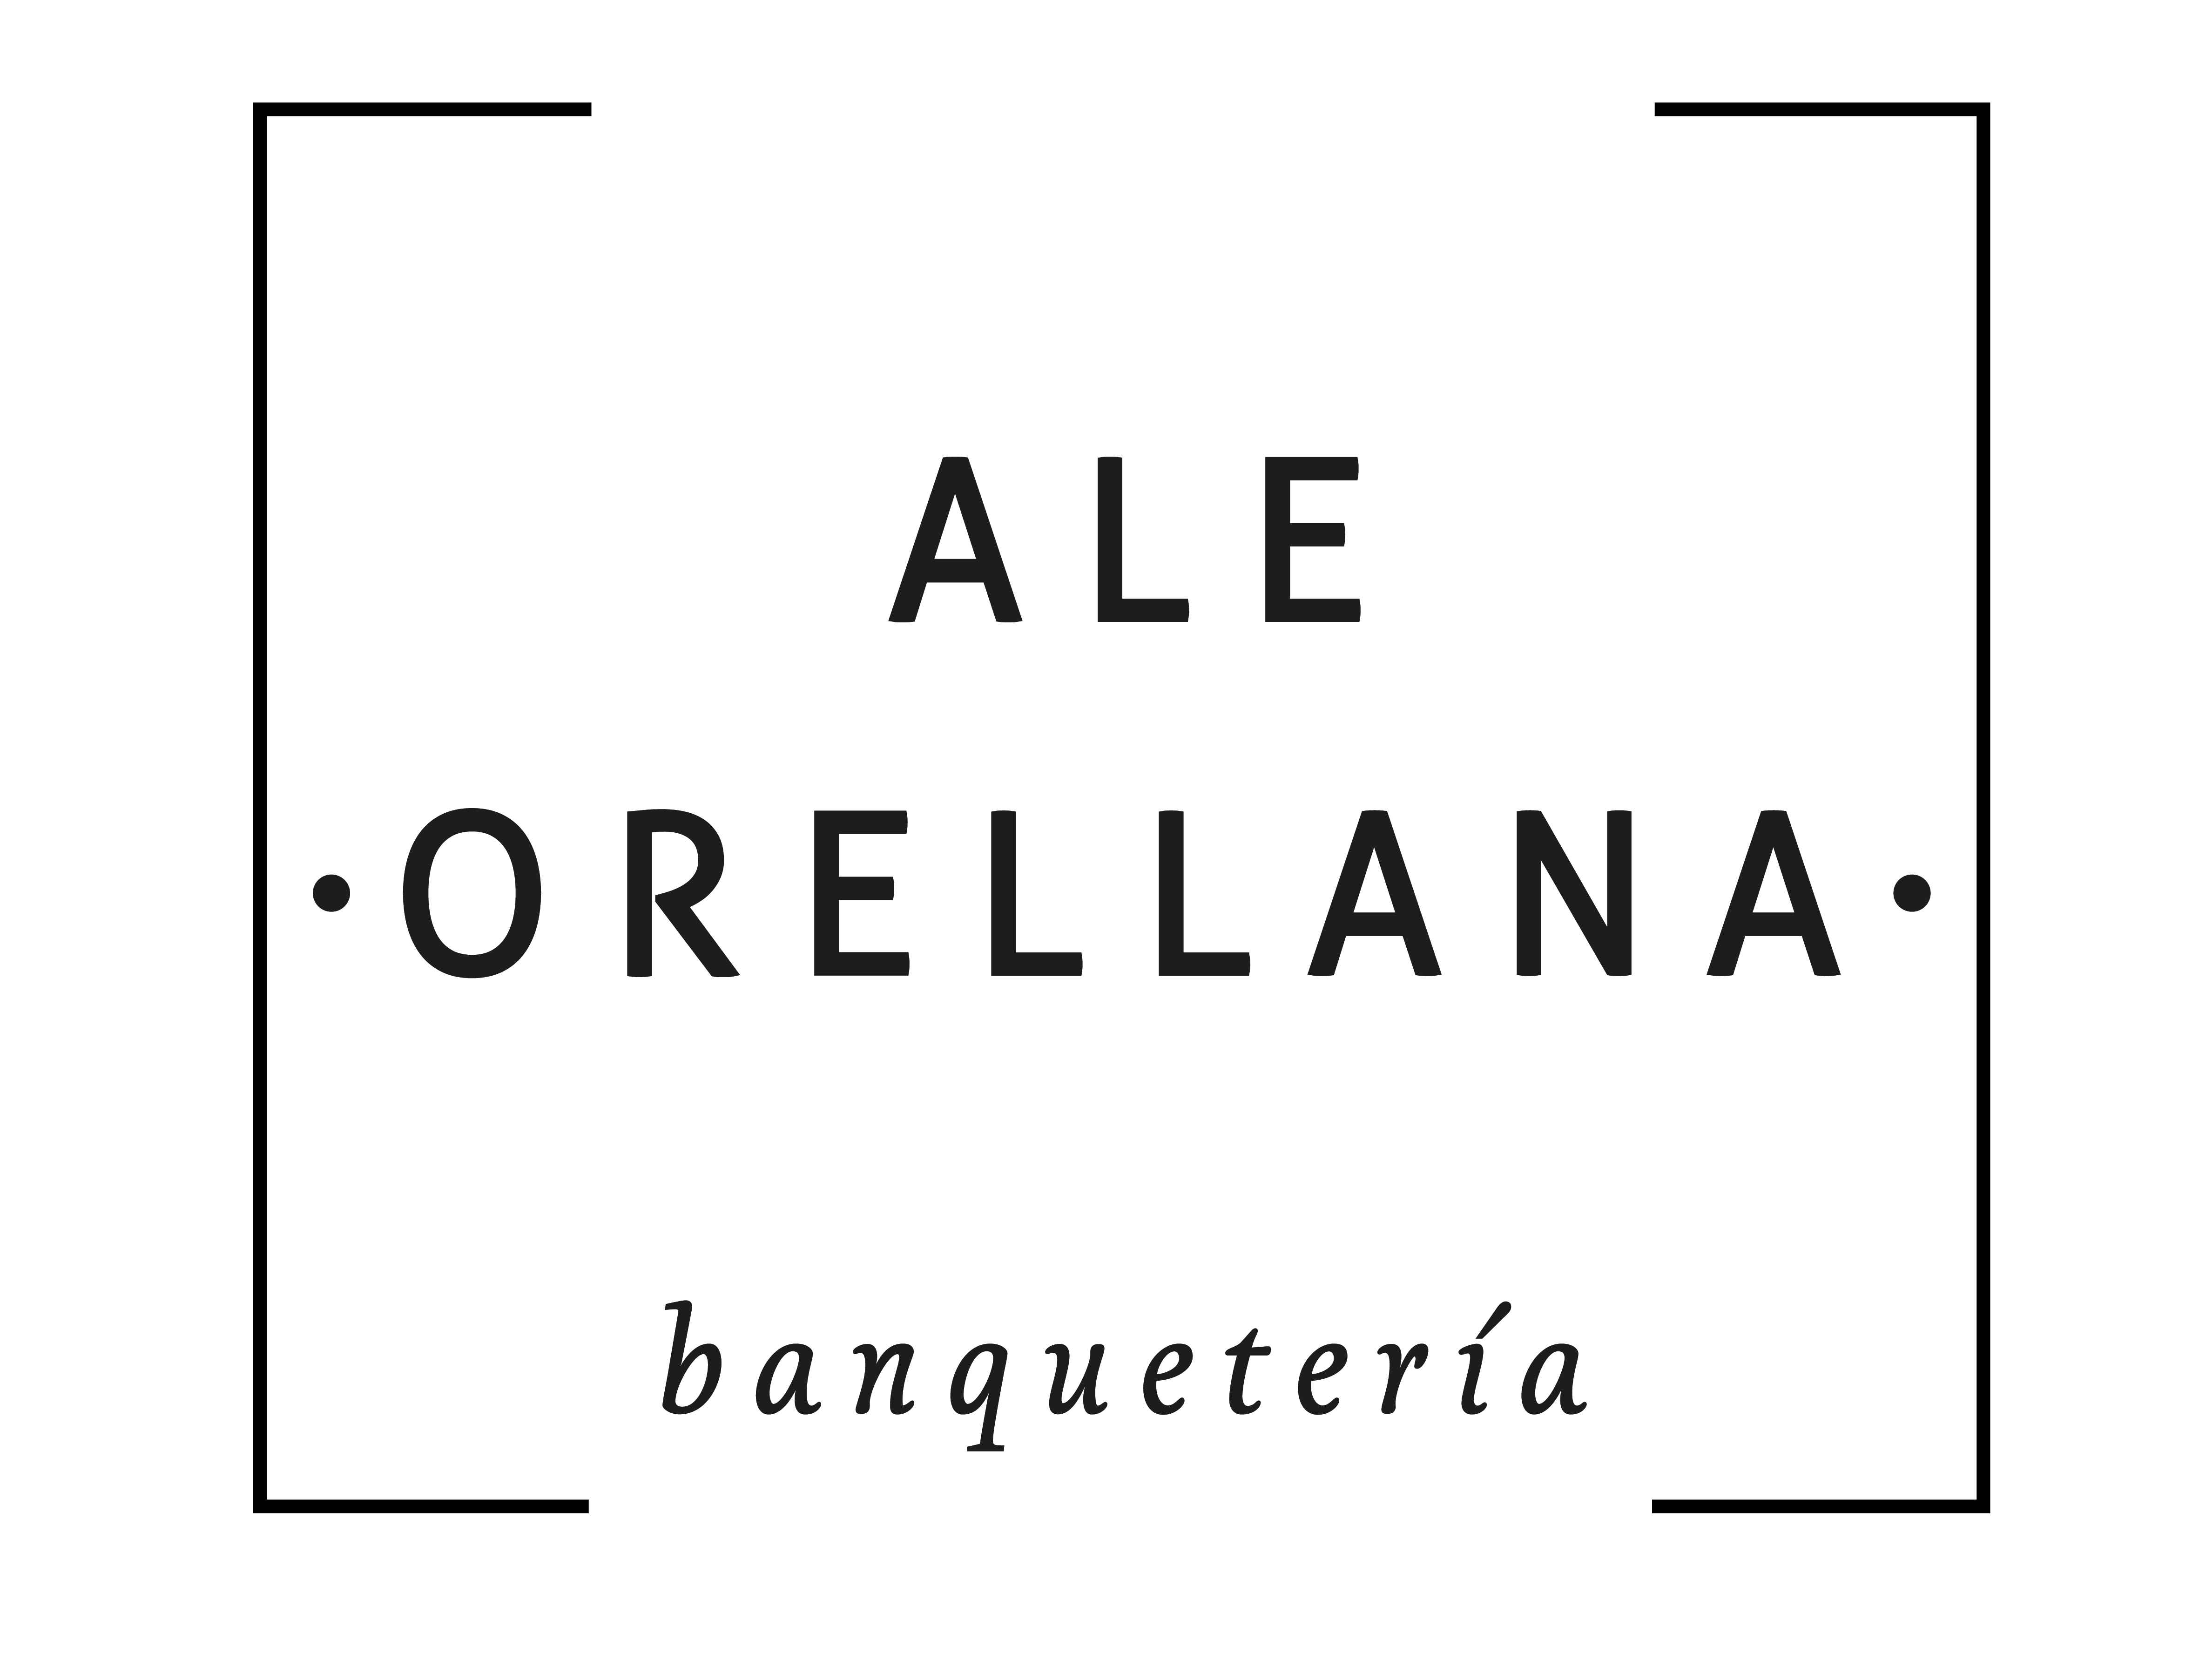 Ale Orellana Banquetería